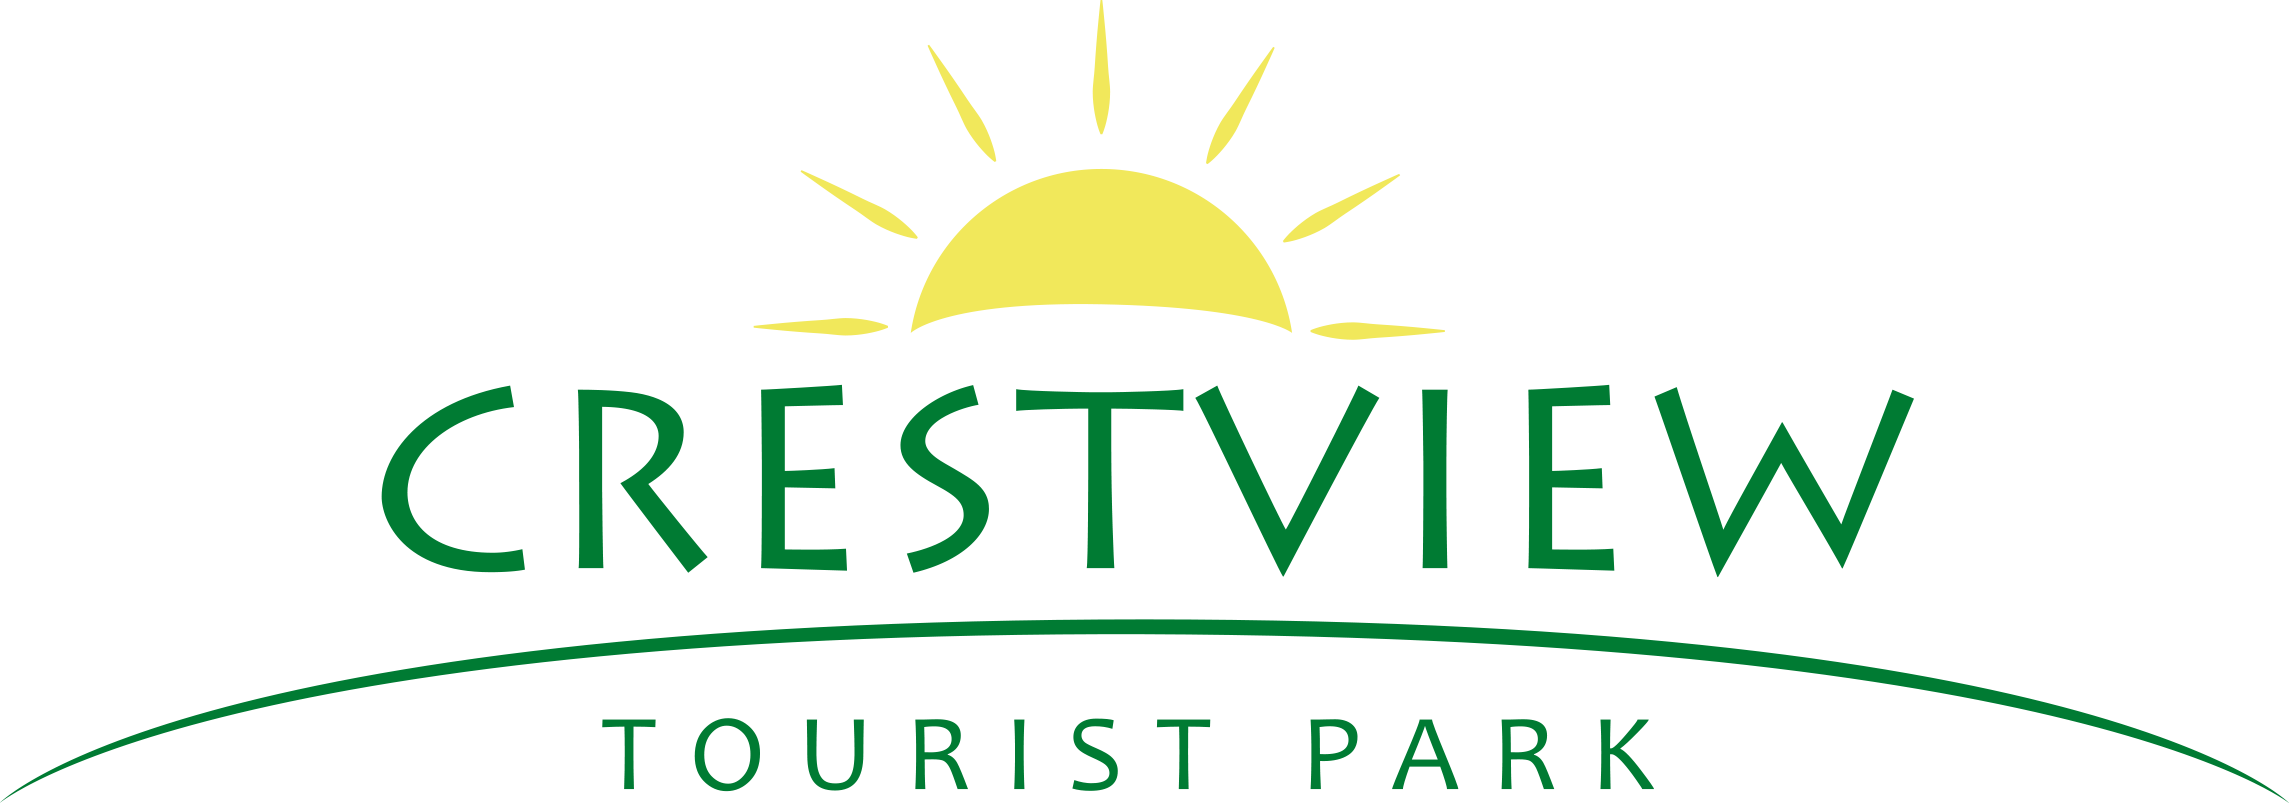 Crestview Tourist Park